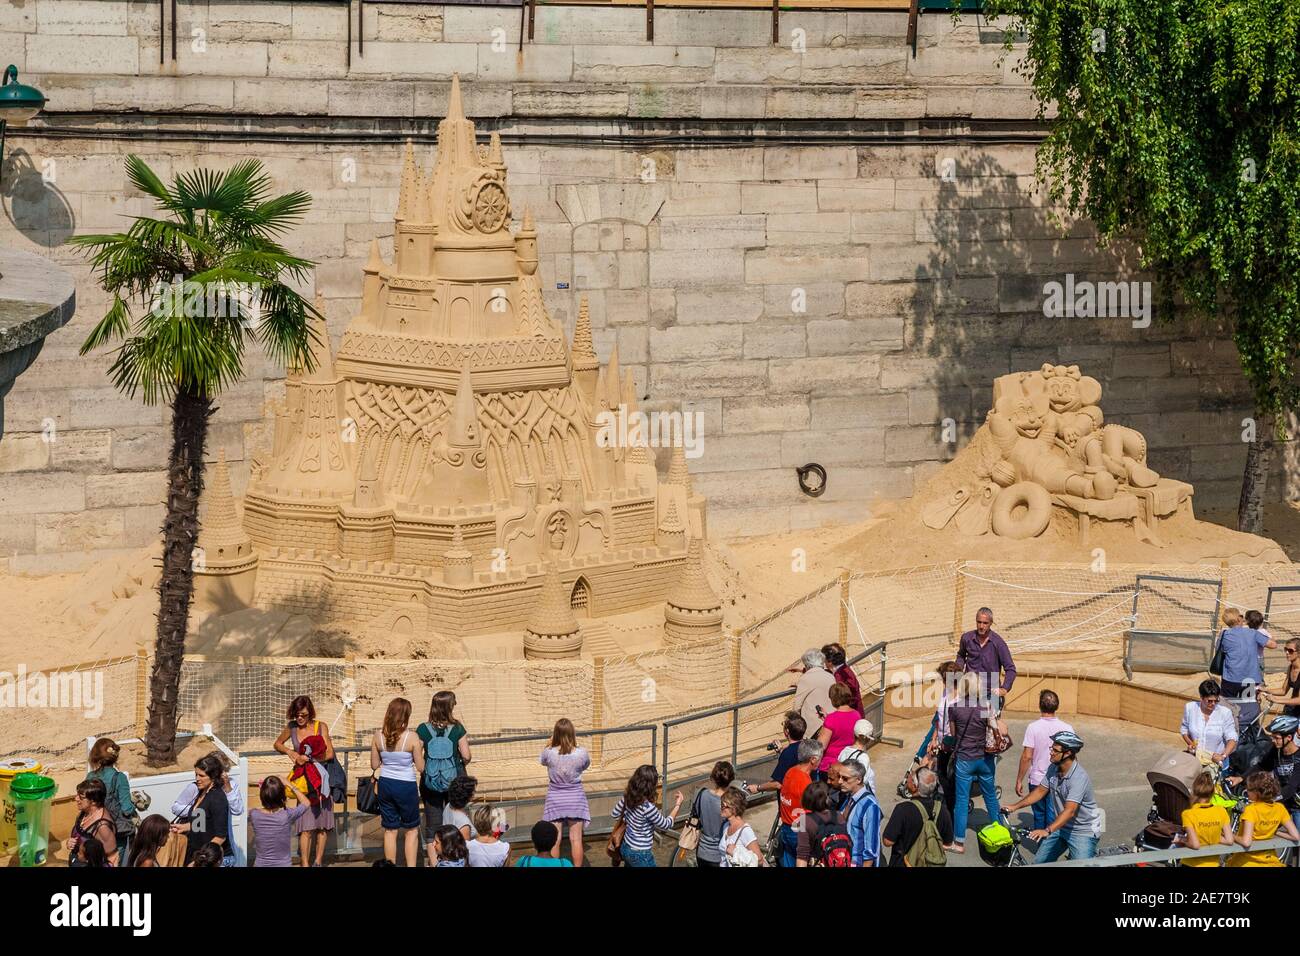 Les gens d'admirer l'immense sculpture de sable d'un château avec Mickey et Minnie au quai du Louvre au cours de la populaire Paris Plage jours sur une belle... Banque D'Images